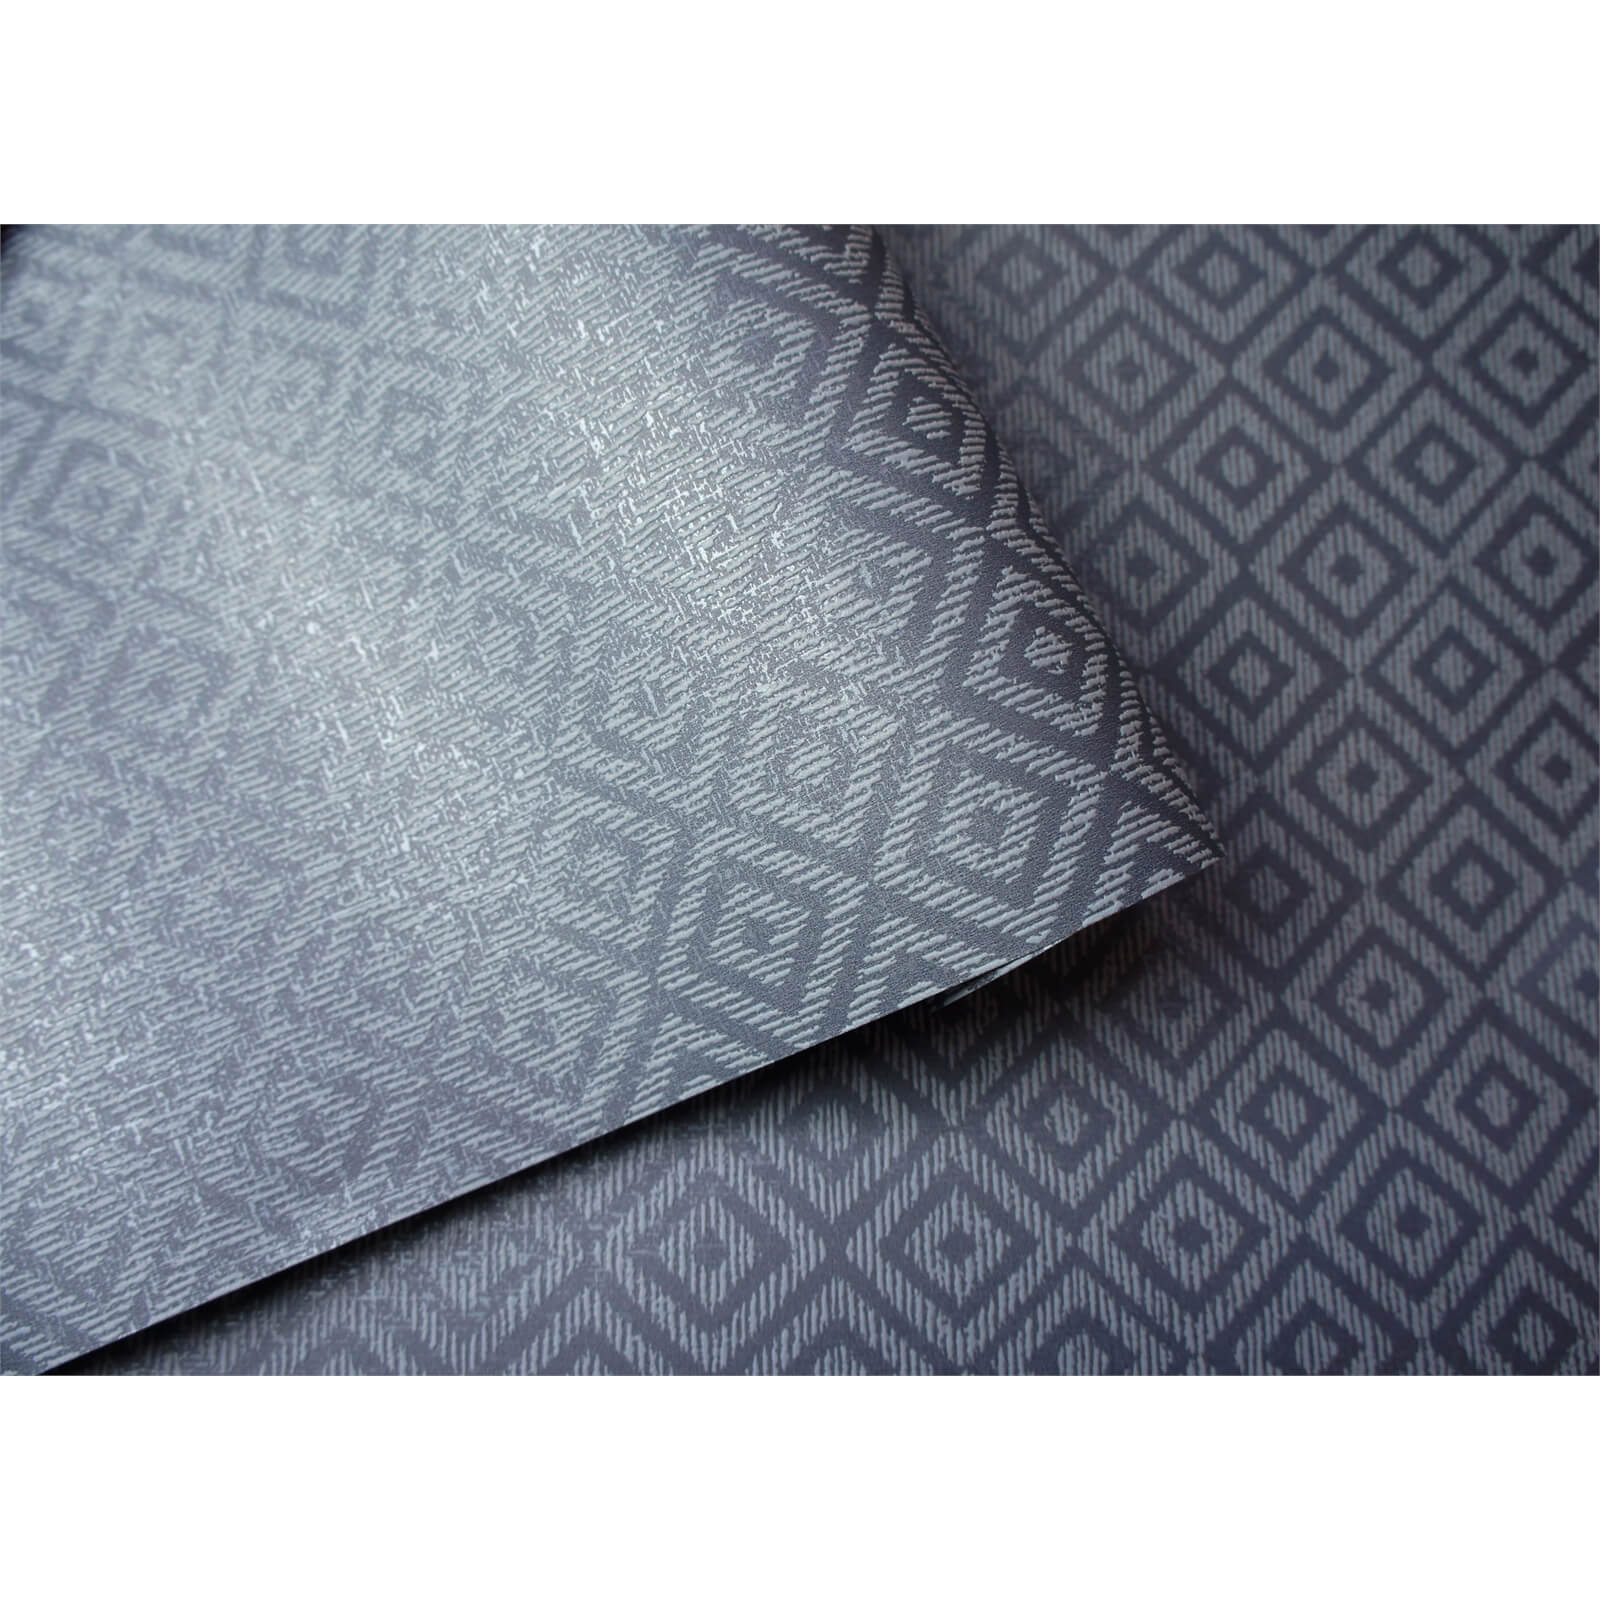 Holden Decor Riviera Diamond Geometric Textured Metallic Navy Wallpaper